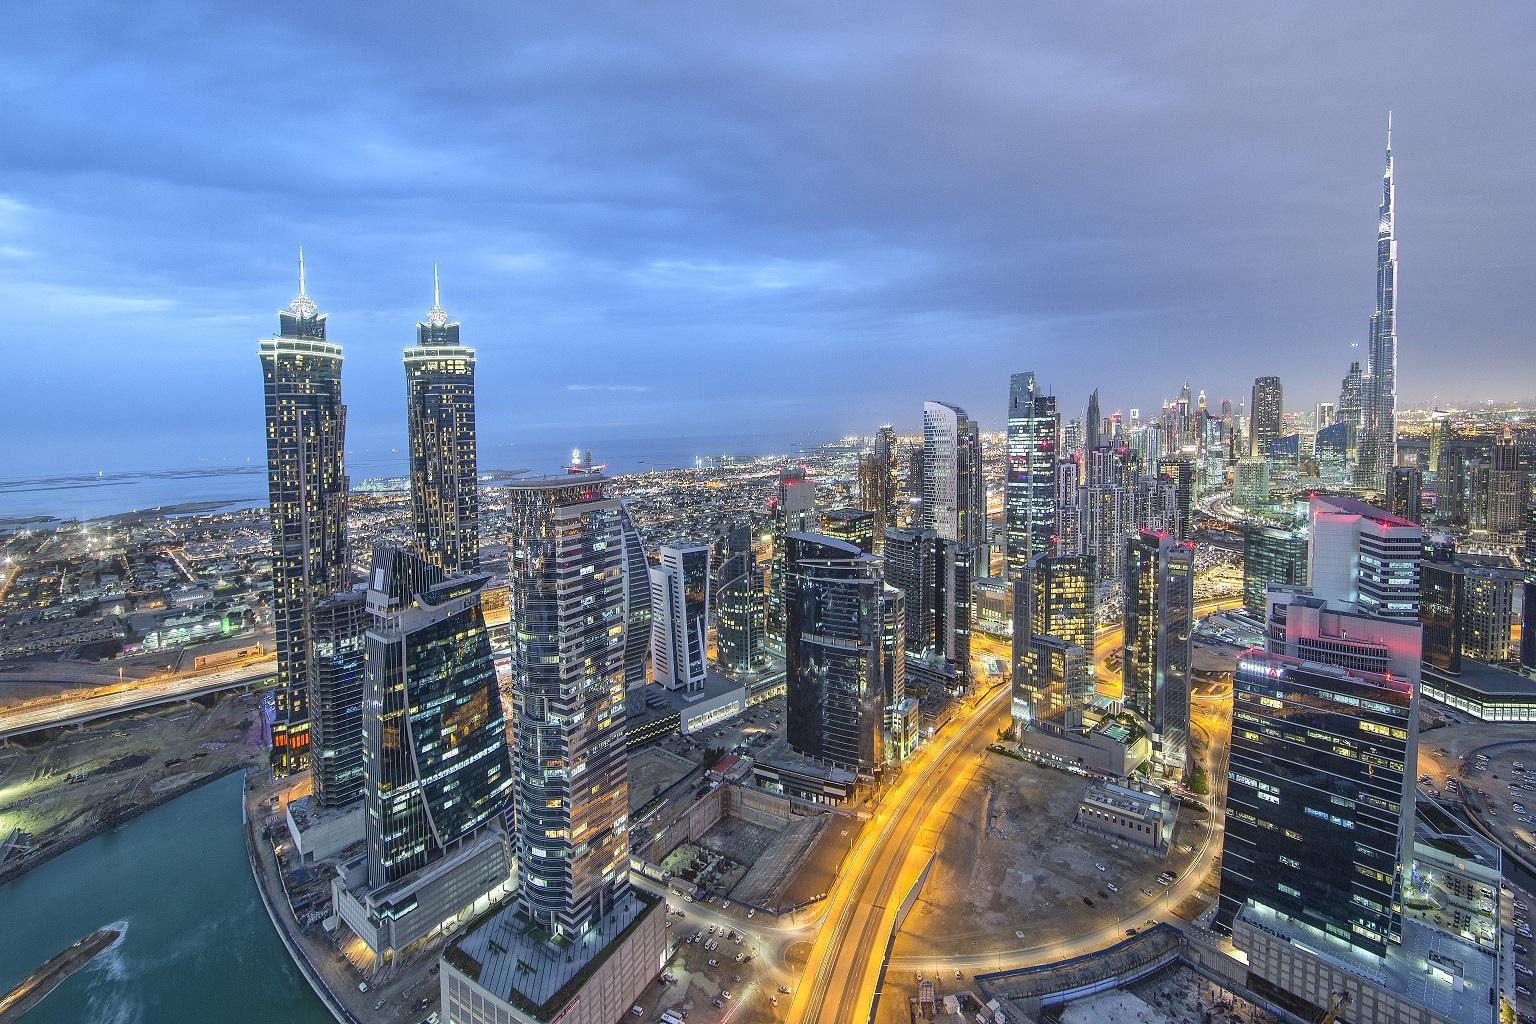 Dubai city view at night